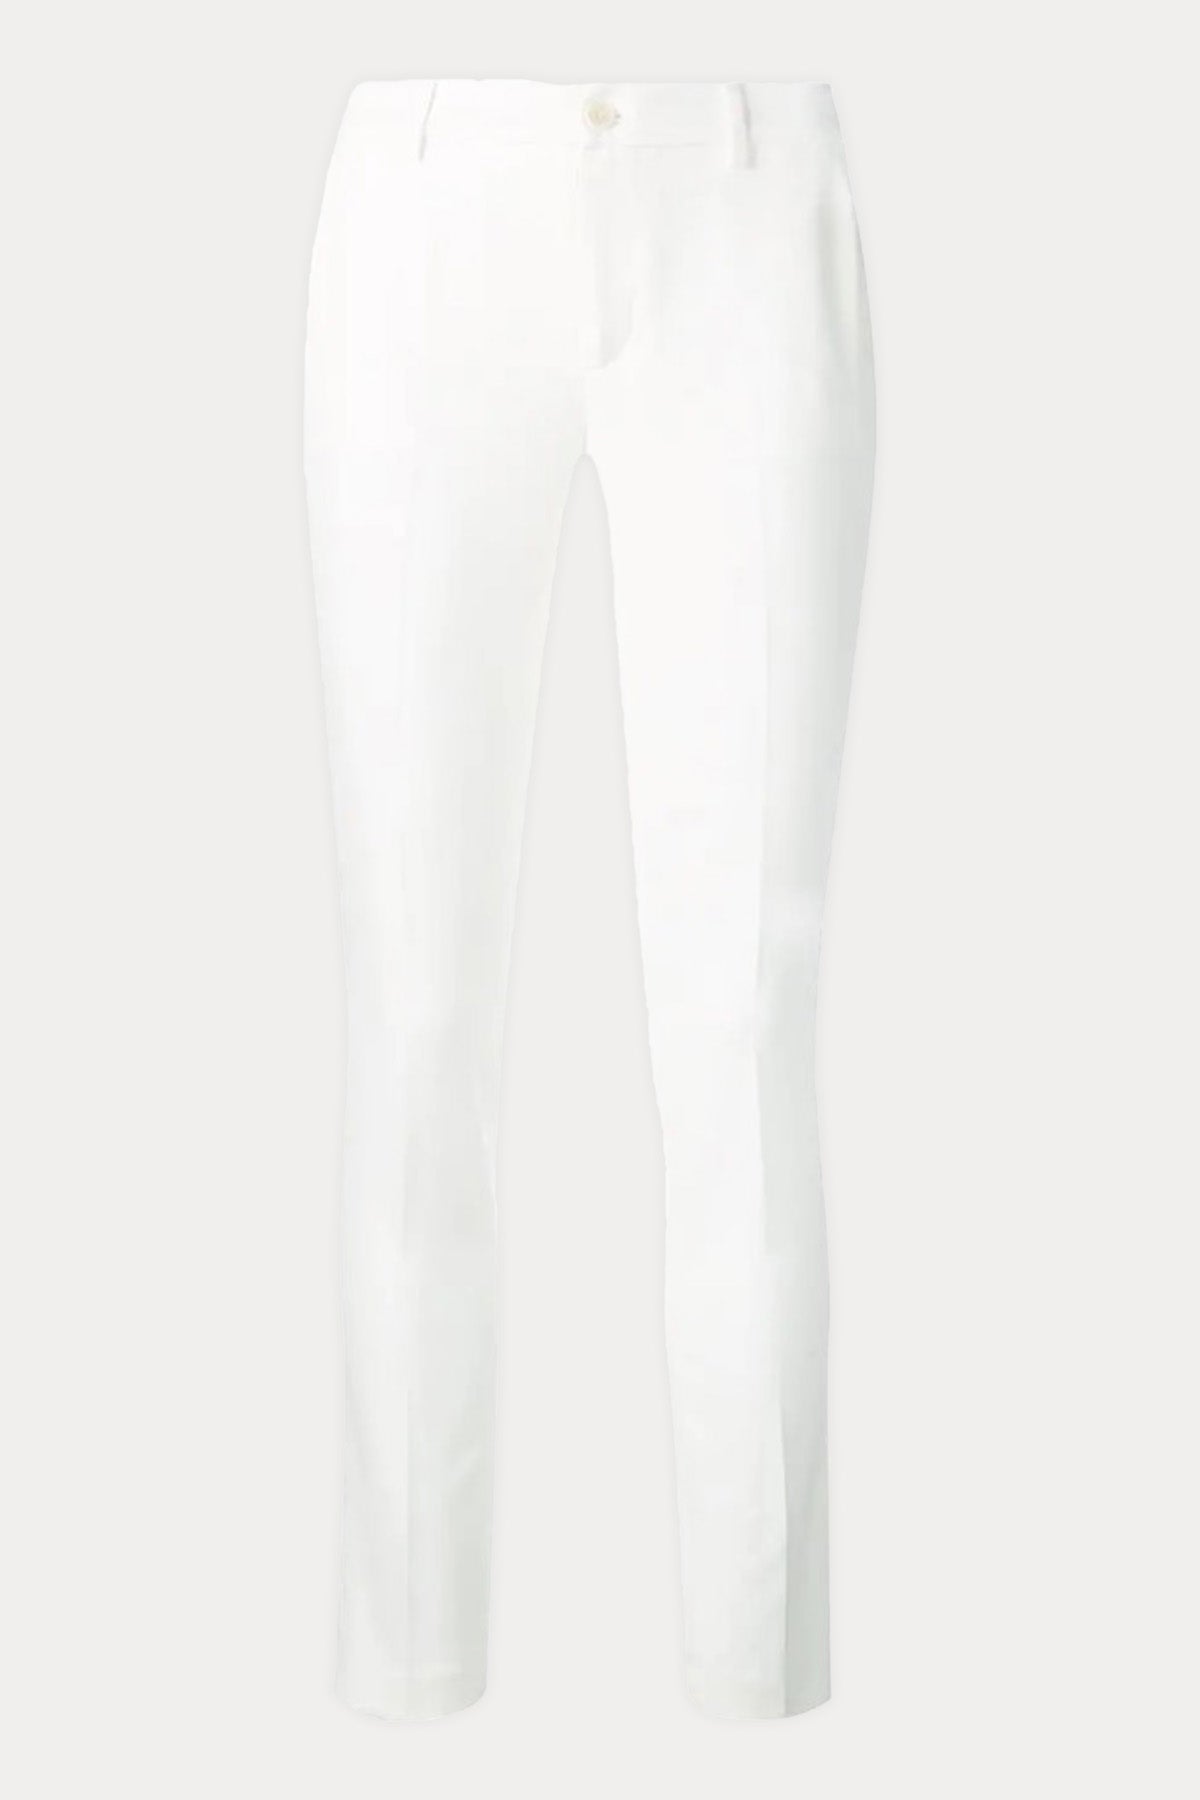 Liu Jo Slim Fit Streç Pantolon-Libas Trendy Fashion Store